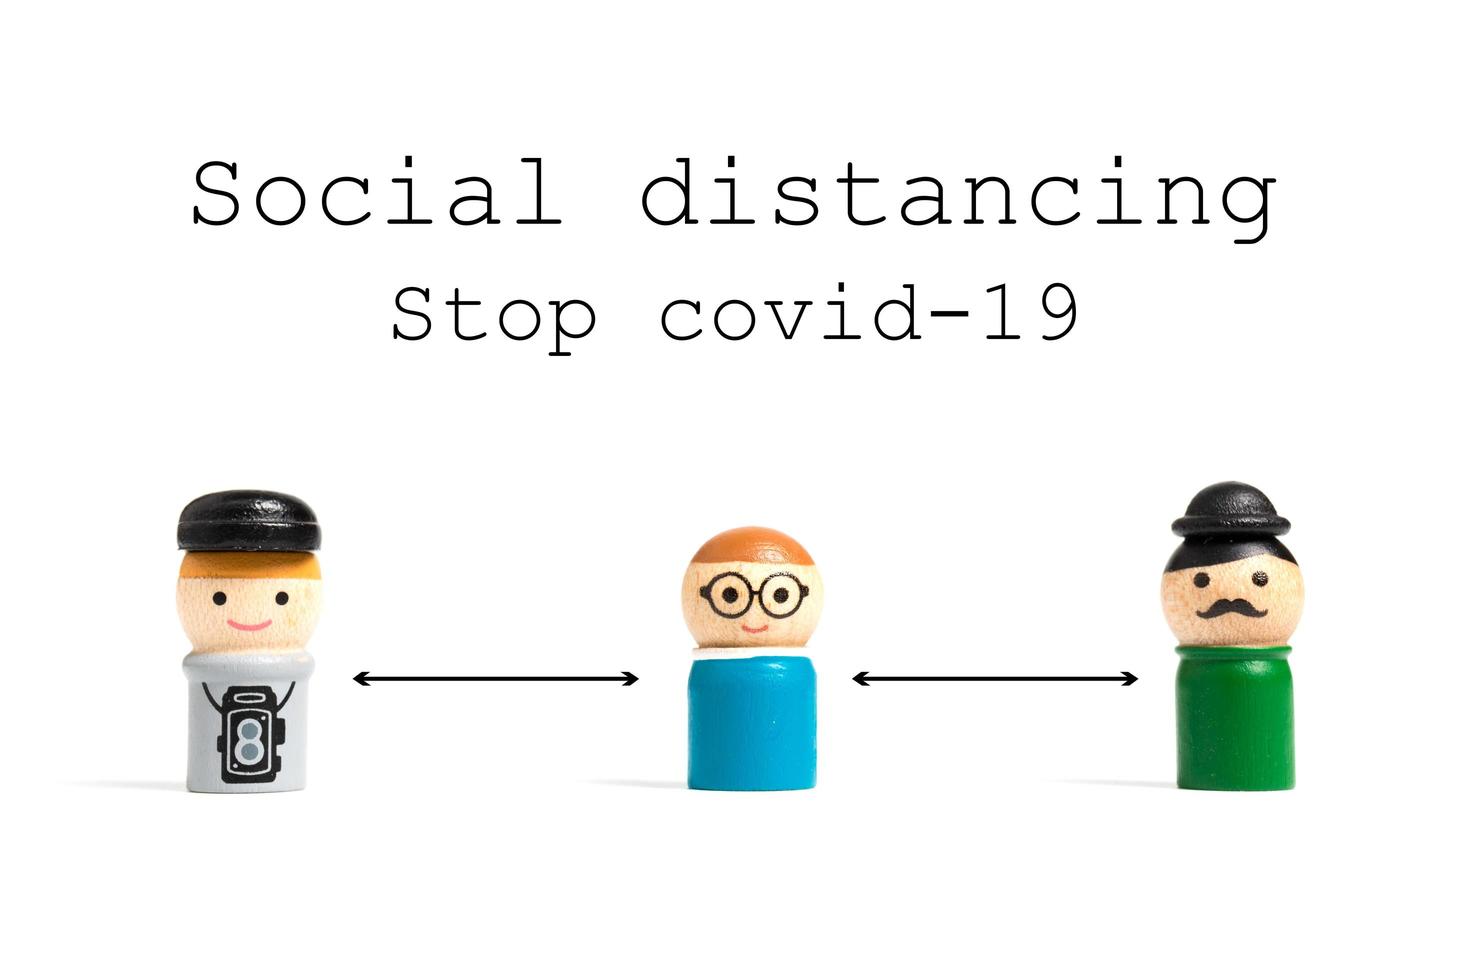 stop covid-19 sociale afstandstekst met miniatuurmensen op een witte achtergrond, sociaal afstandsconcept foto